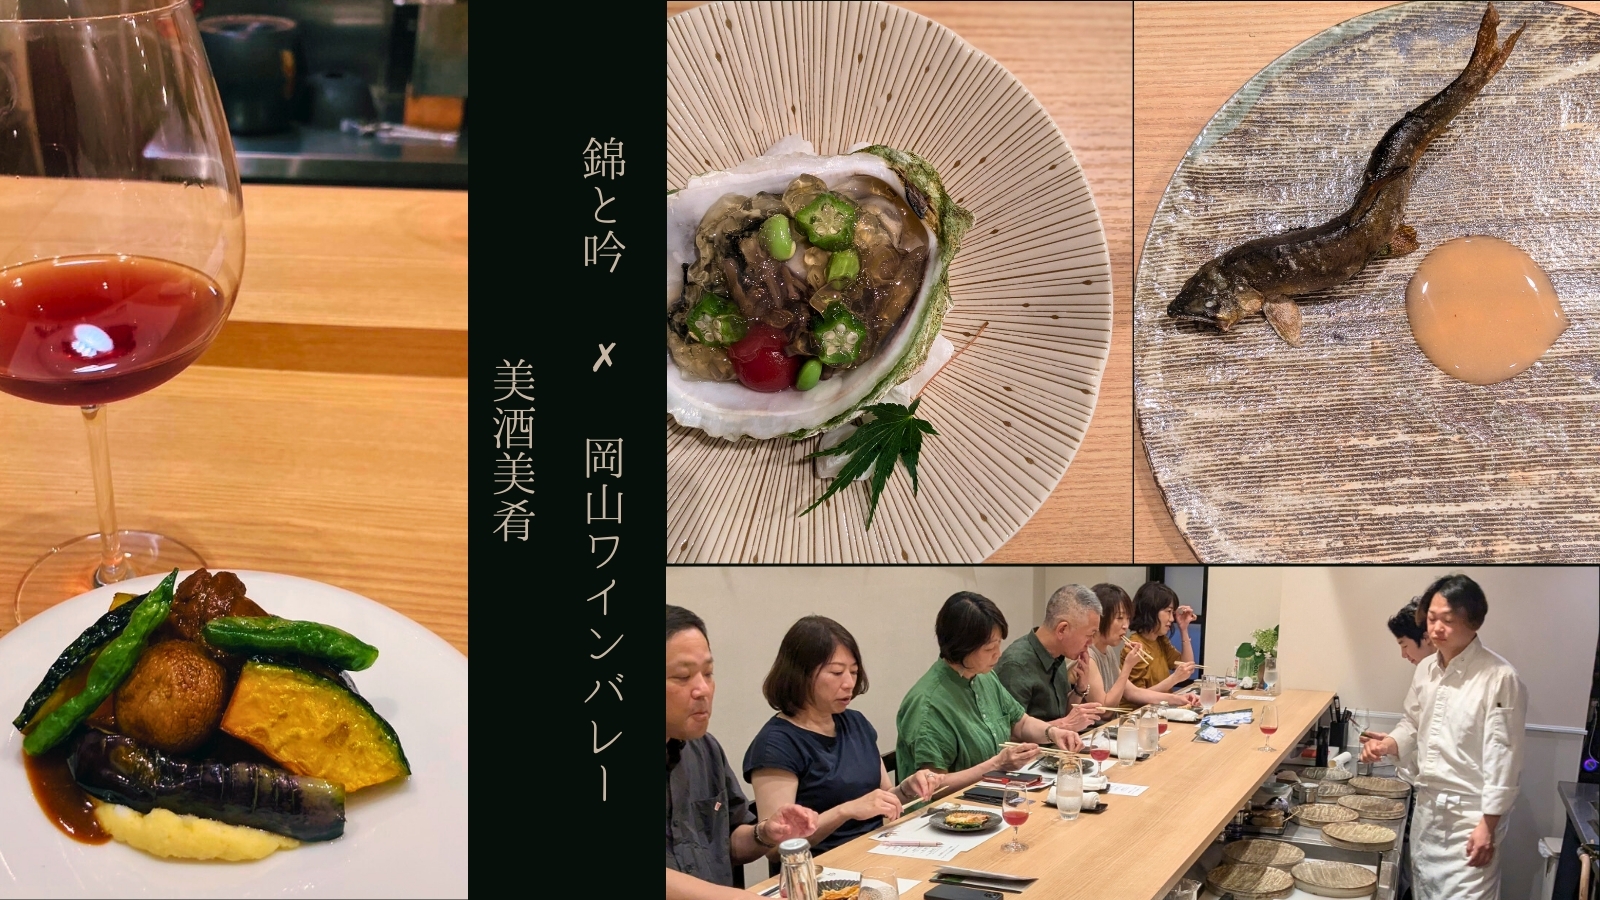 和食と日本ワインのペアリングメーカーズディナーを
岡山ワインバレーが初開催